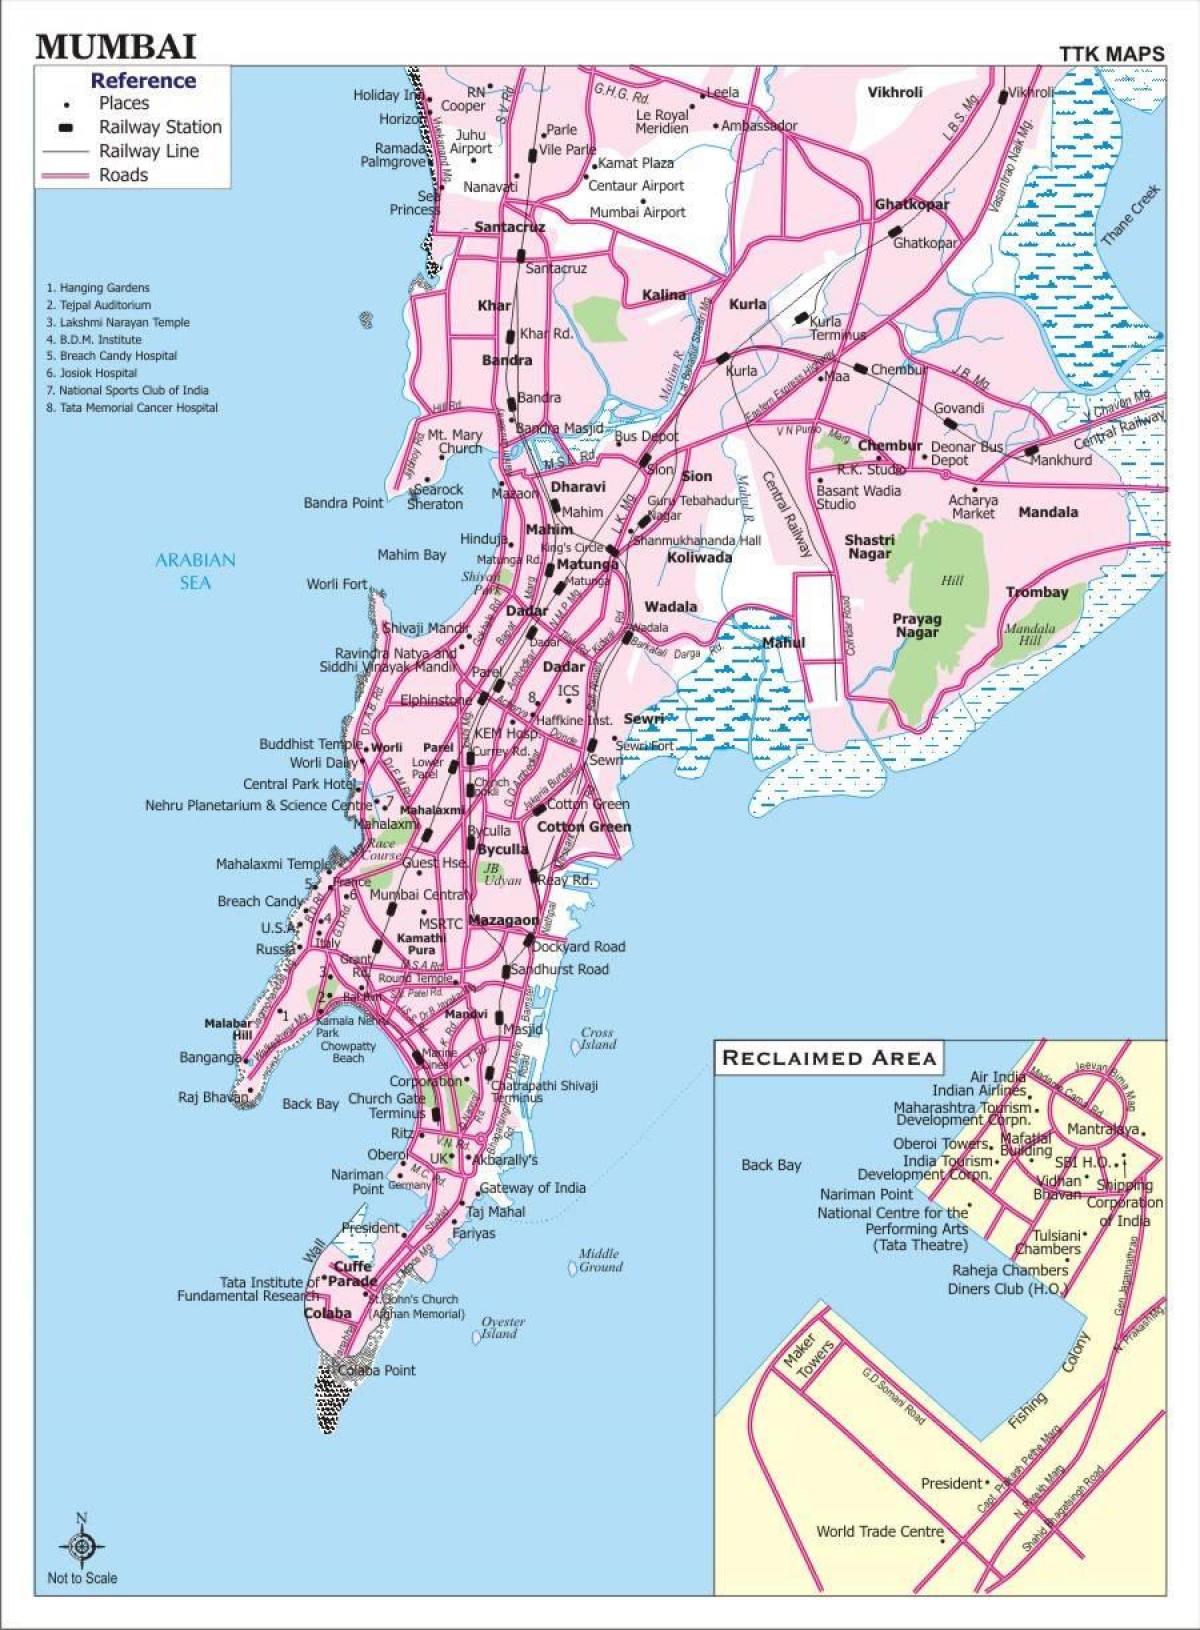 શહેર નકશો મુંબઇ